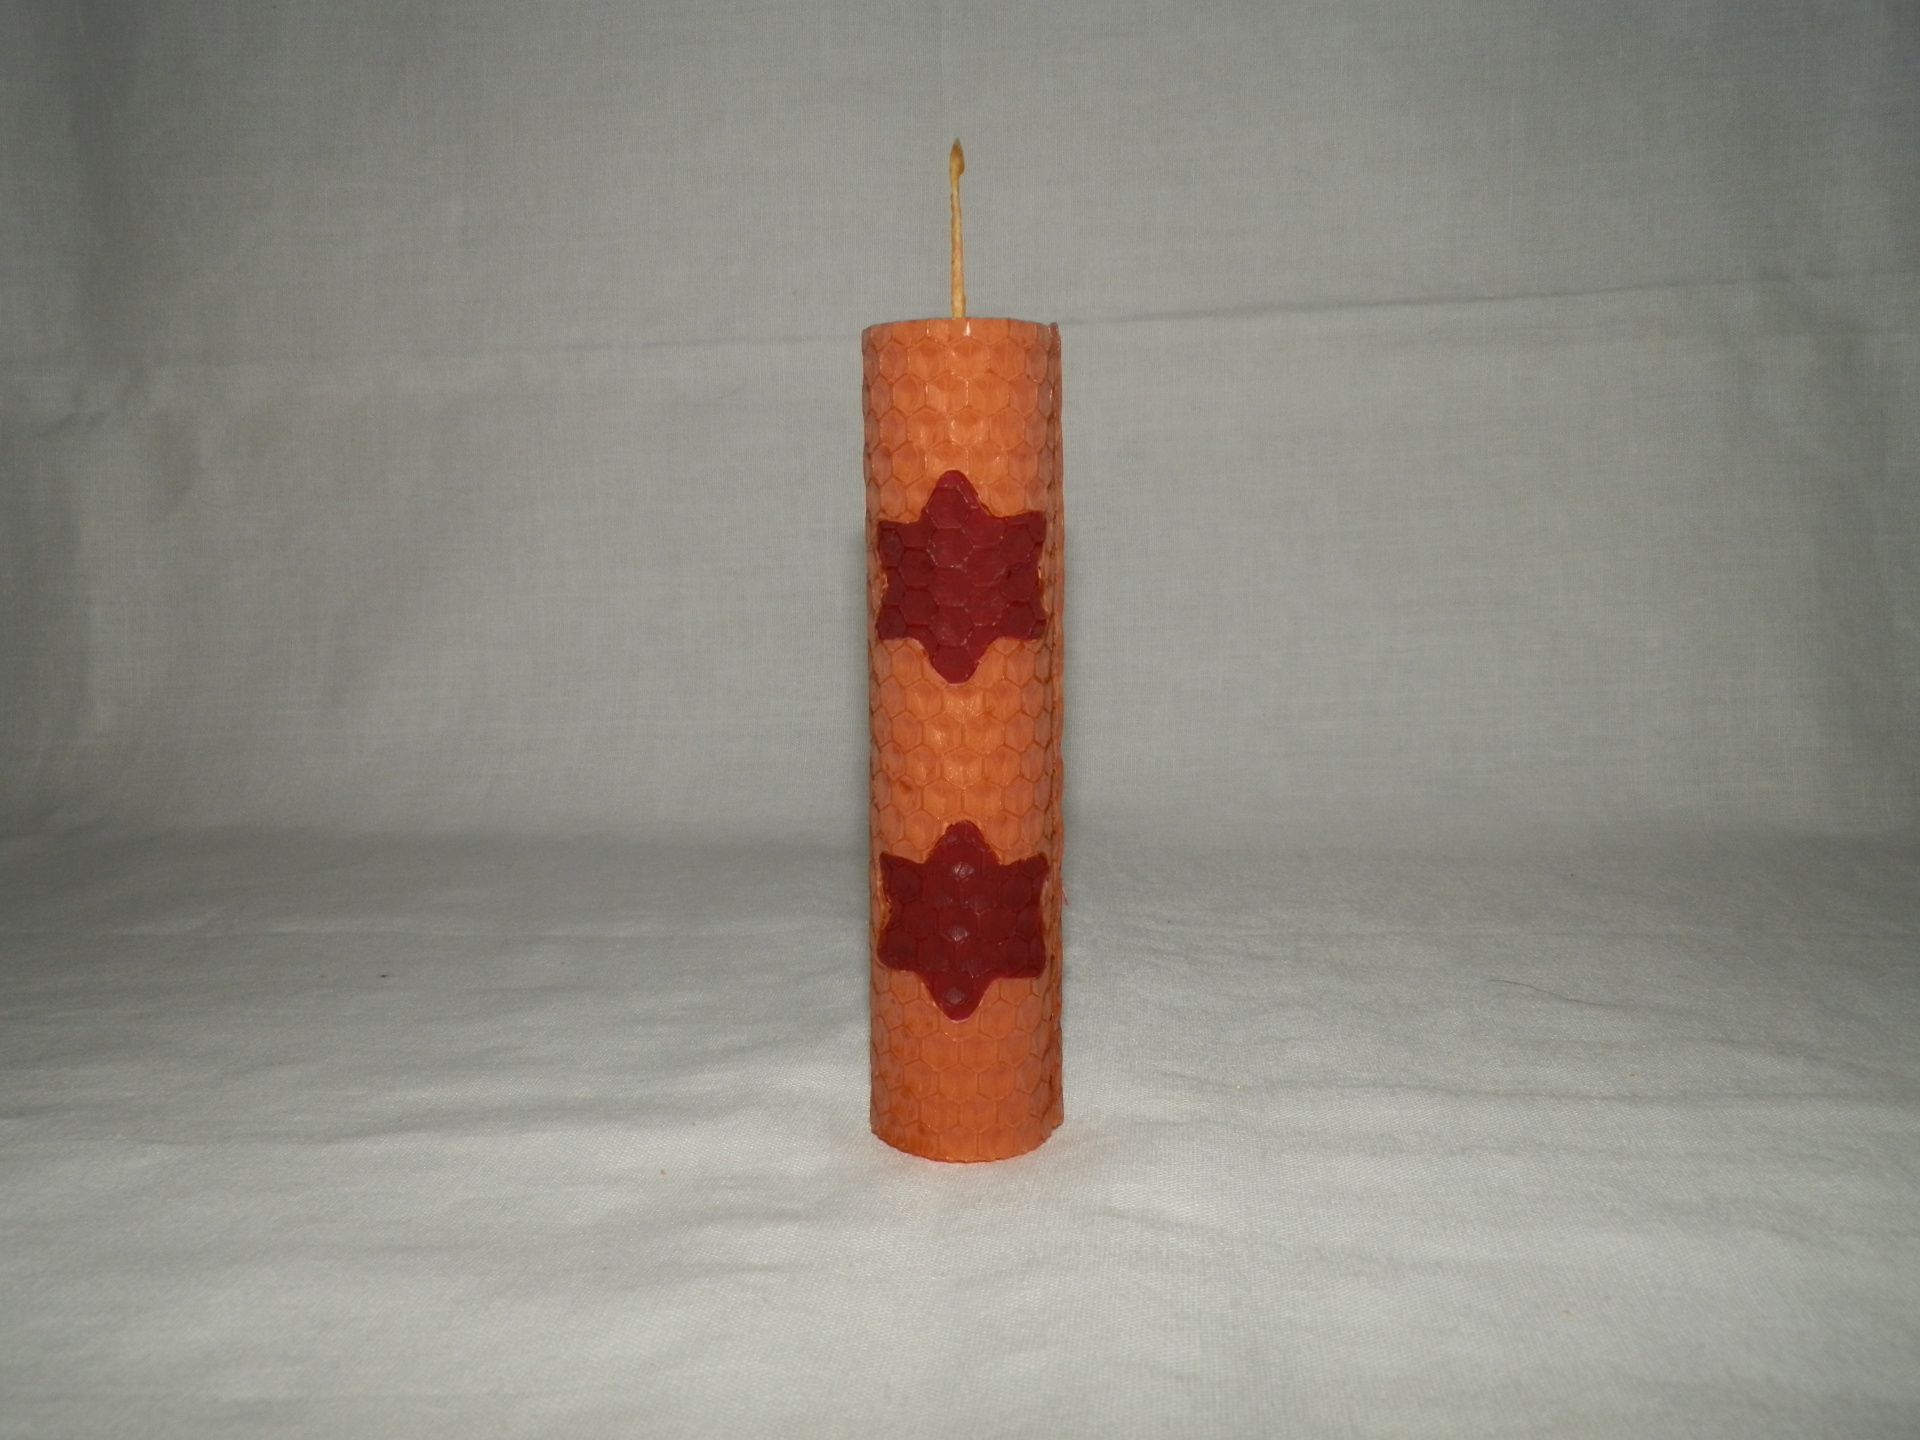 Farebná vosková sviečka - valec 12 x 3 cm - č.14